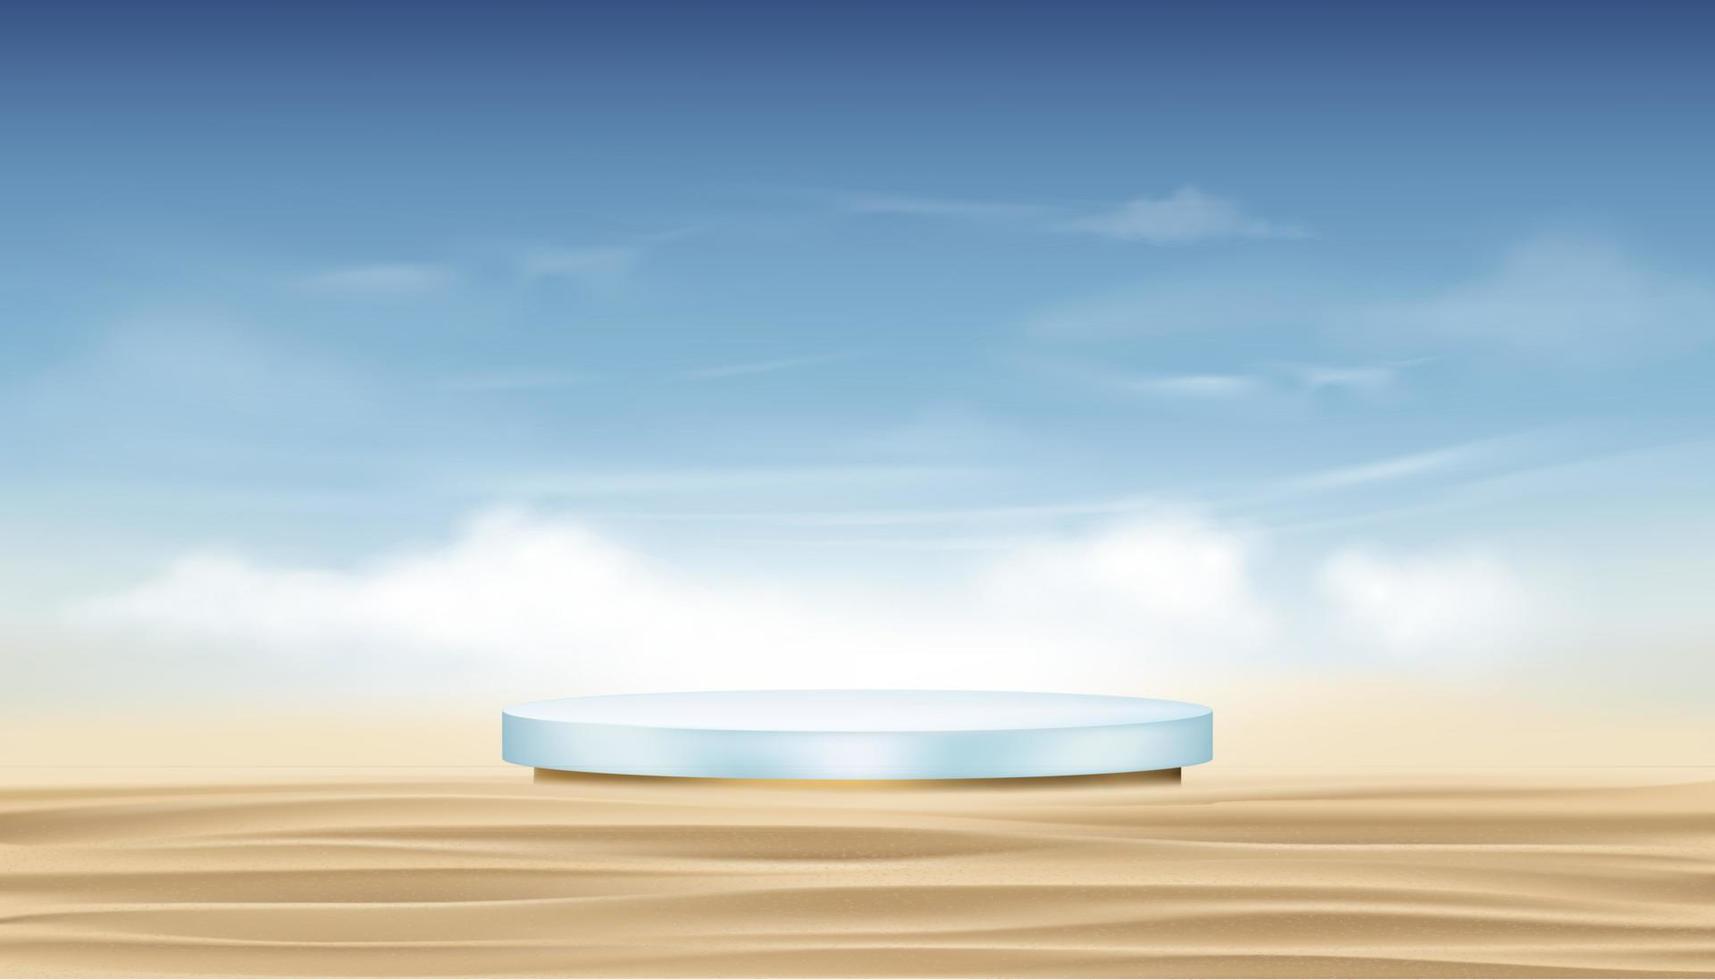 bakgrund podium cylinder stativ på sandstrand, fluffigt moln och blus himmel bakgrund, vektor 3d banner havsstrand, scen piedestal för produktpresentation kosmetika eller spa på sommarkampanj